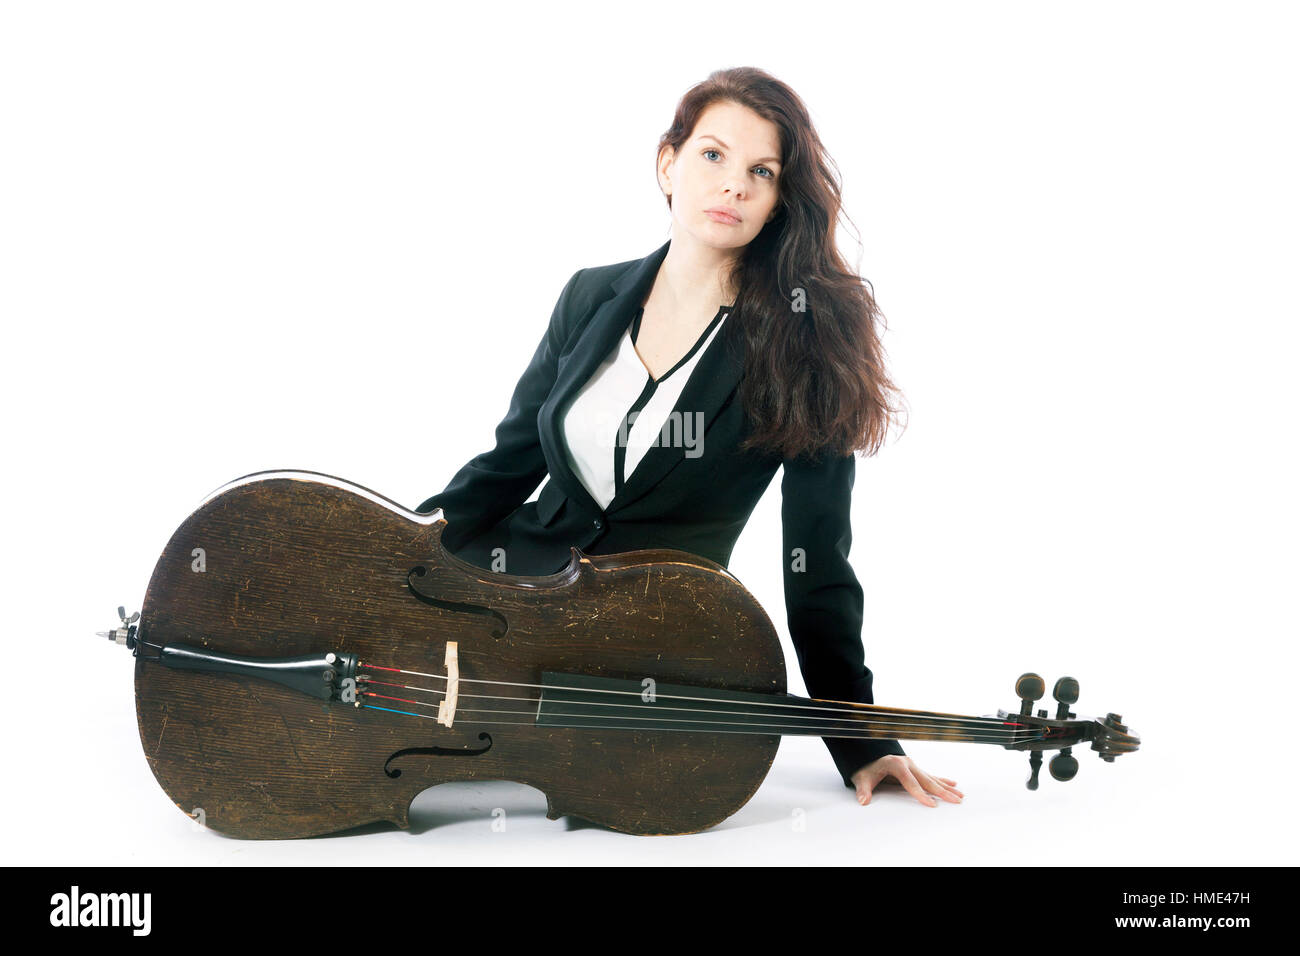 Belle brune avec violoncelle en studio against white background Banque D'Images